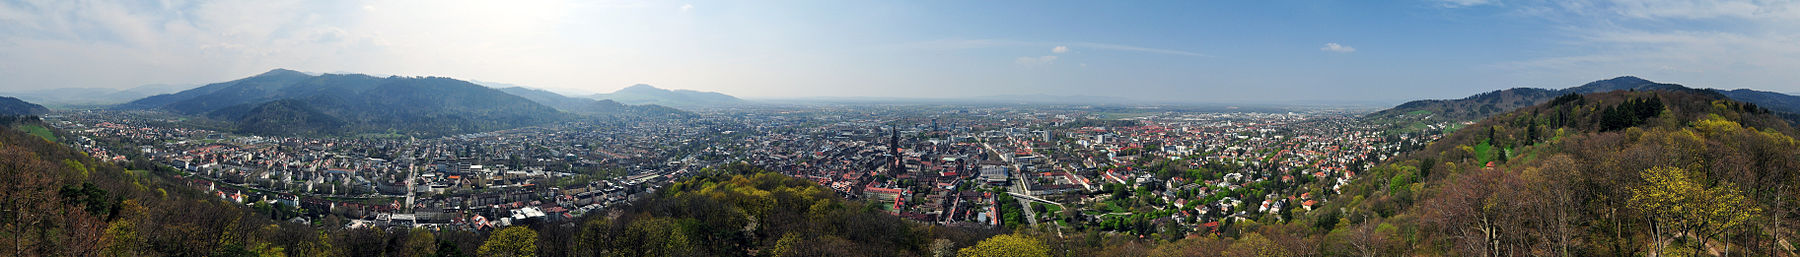 Freiburg banner.jpg